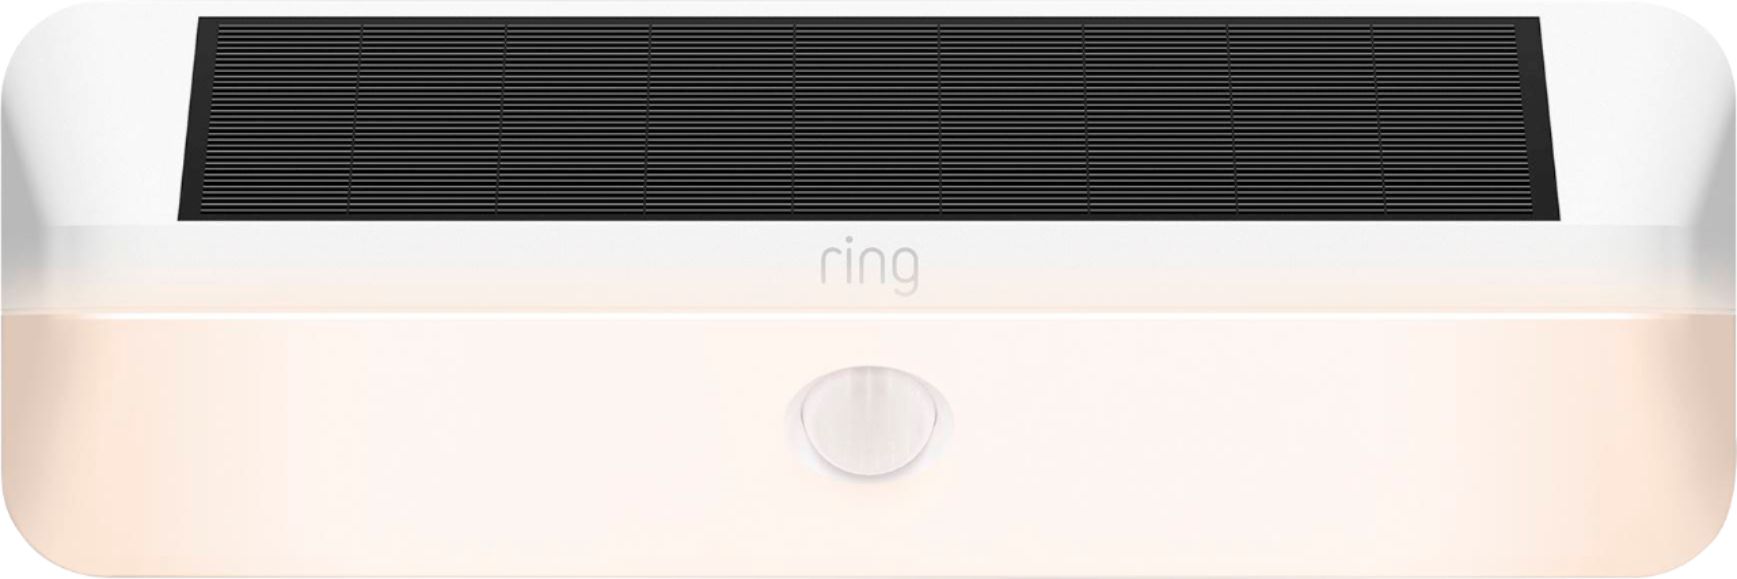 Ring - Smart Solar Wall Light - White